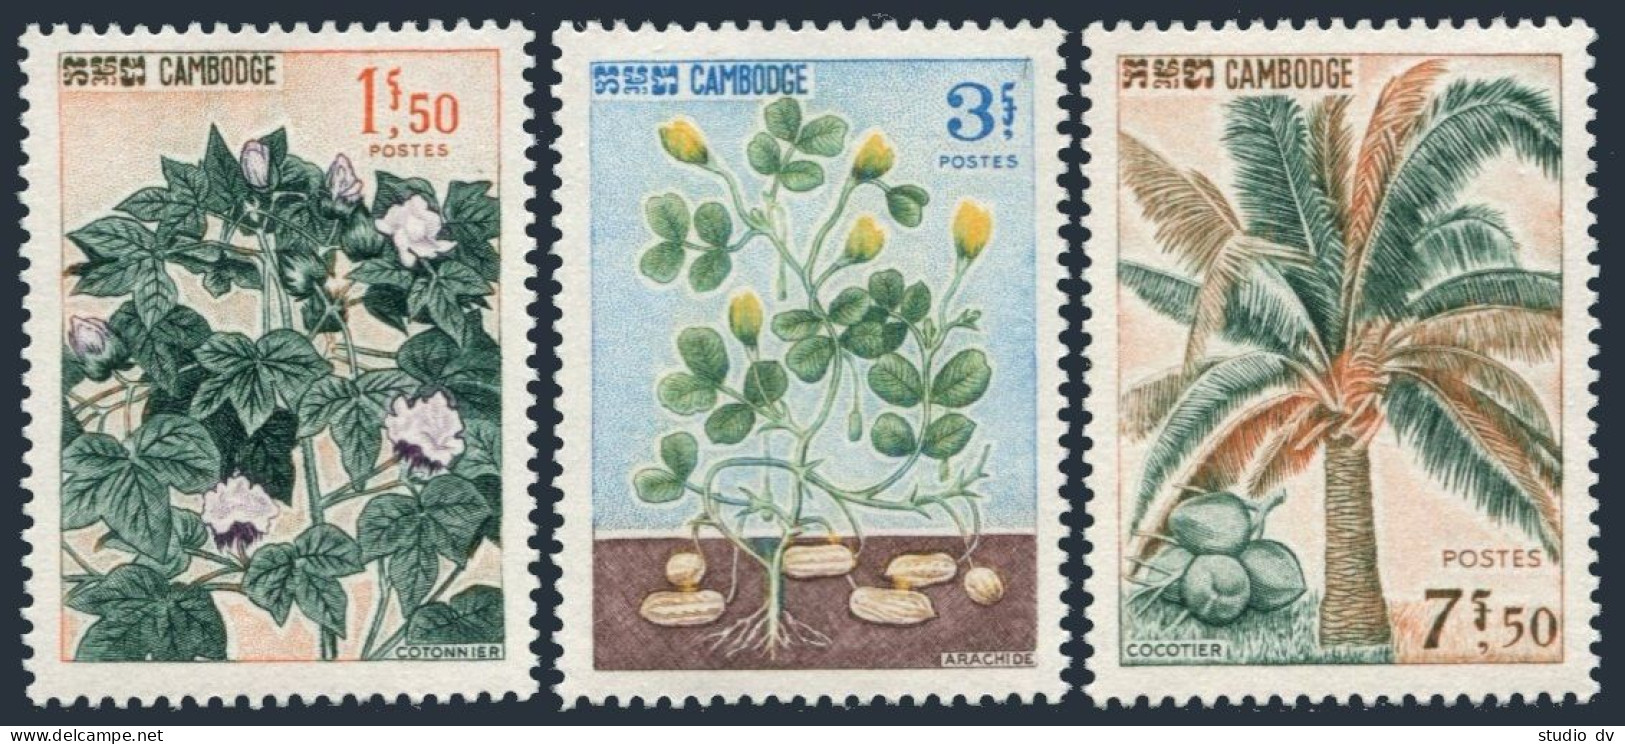 Cambodia 149-151, MNH. Michel 192-194. Cotton, Peanut Plants, Coconut Palm,1965. - Cambodia